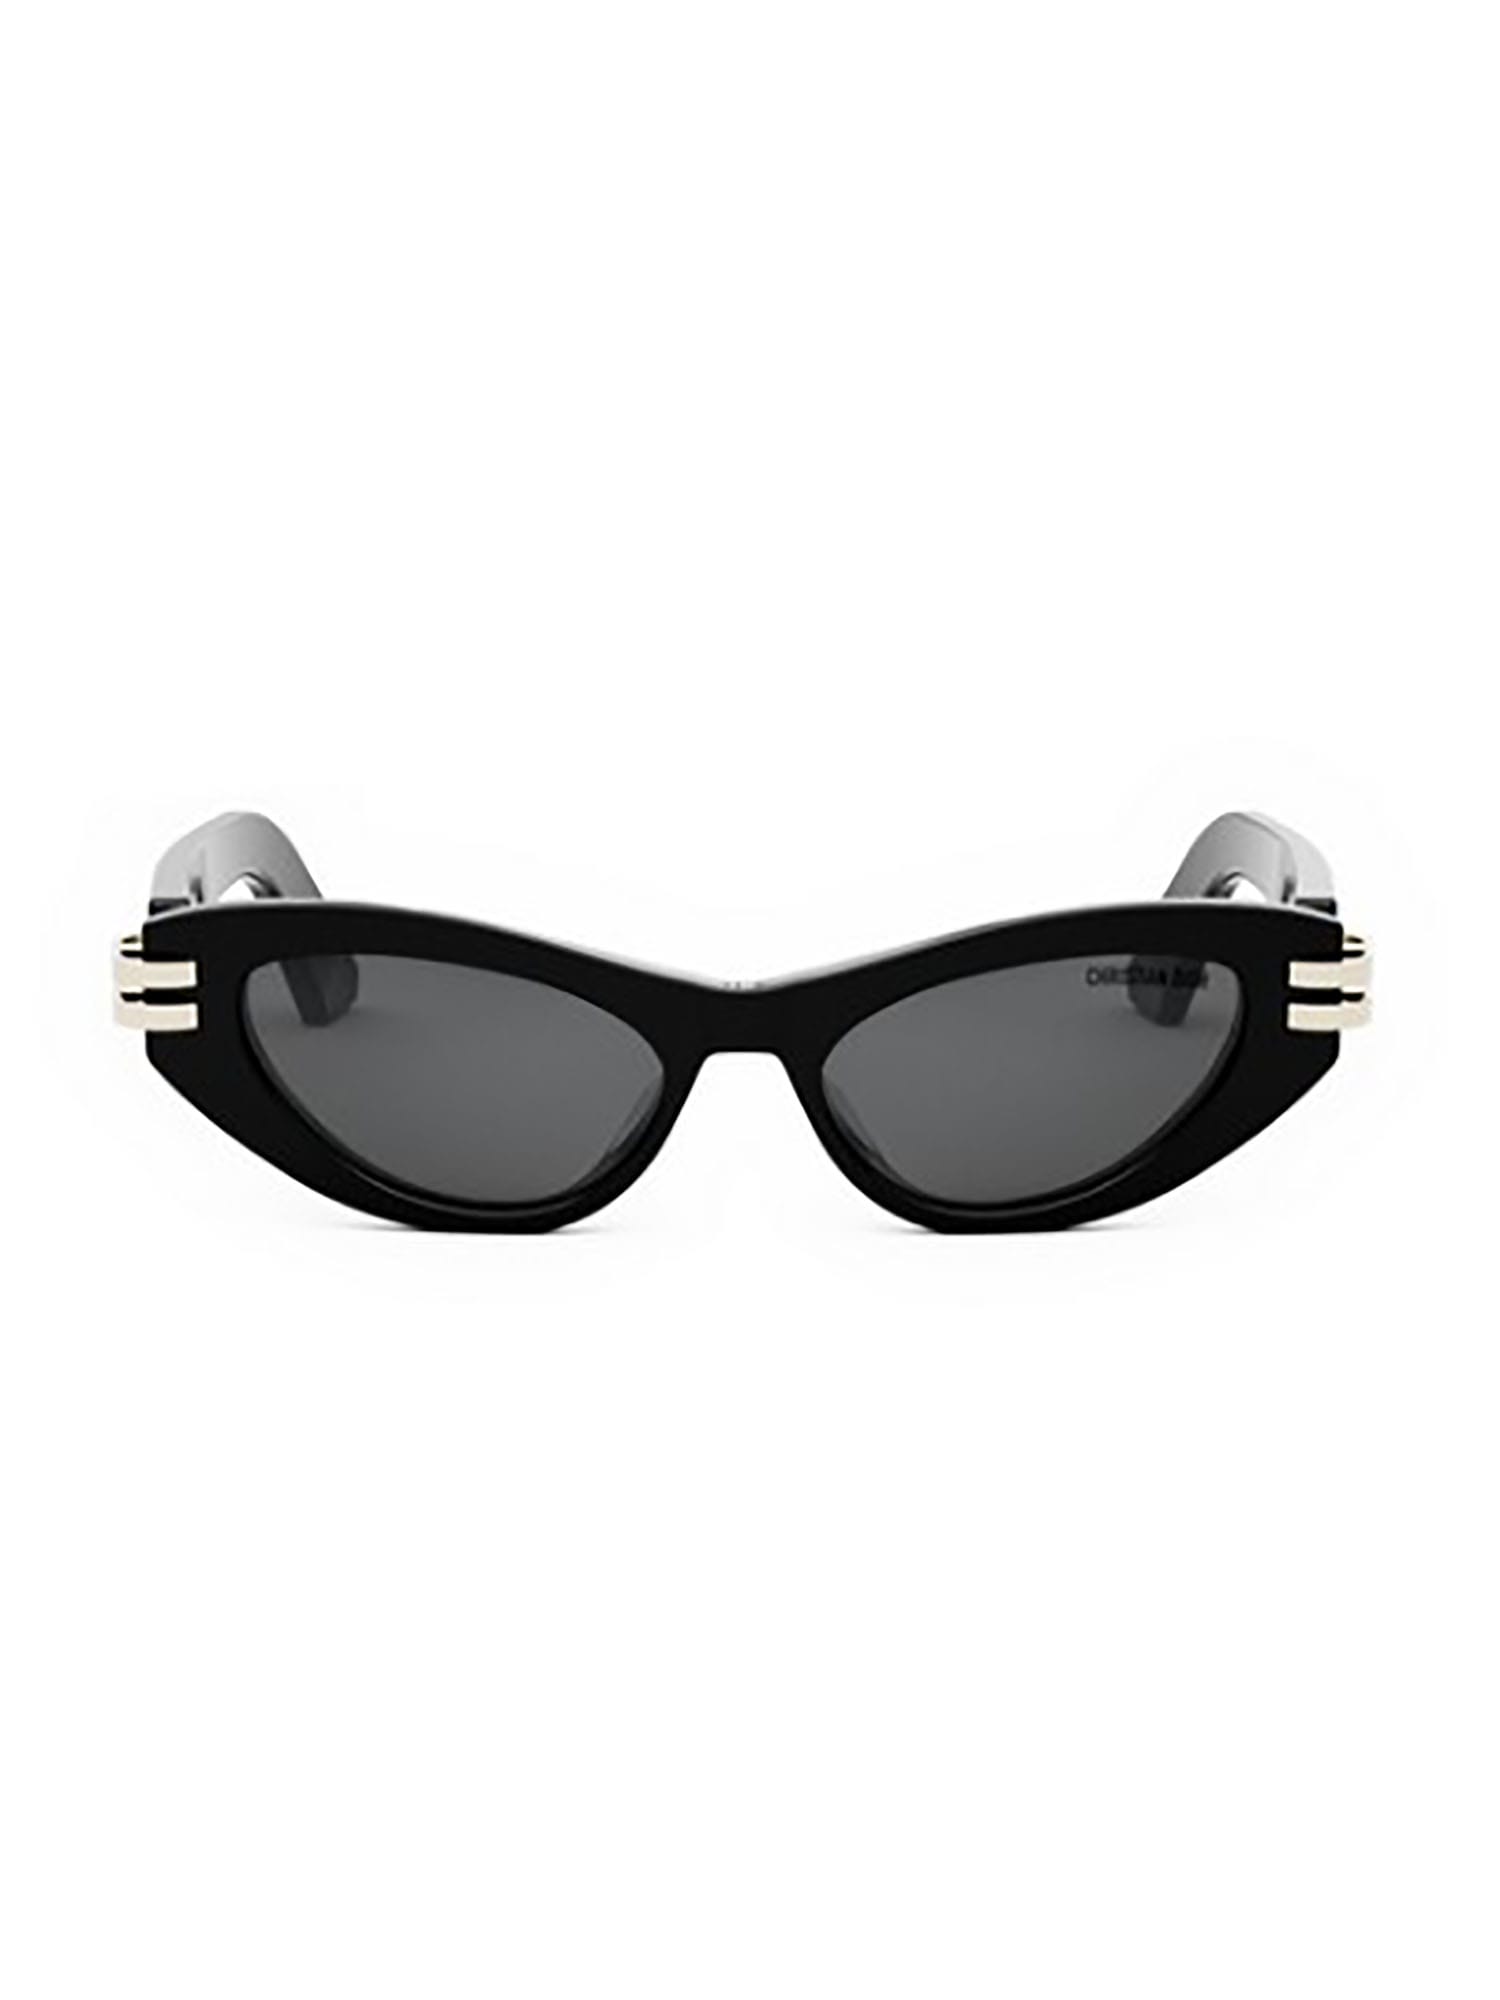 CDIOR B1U Sunglasses